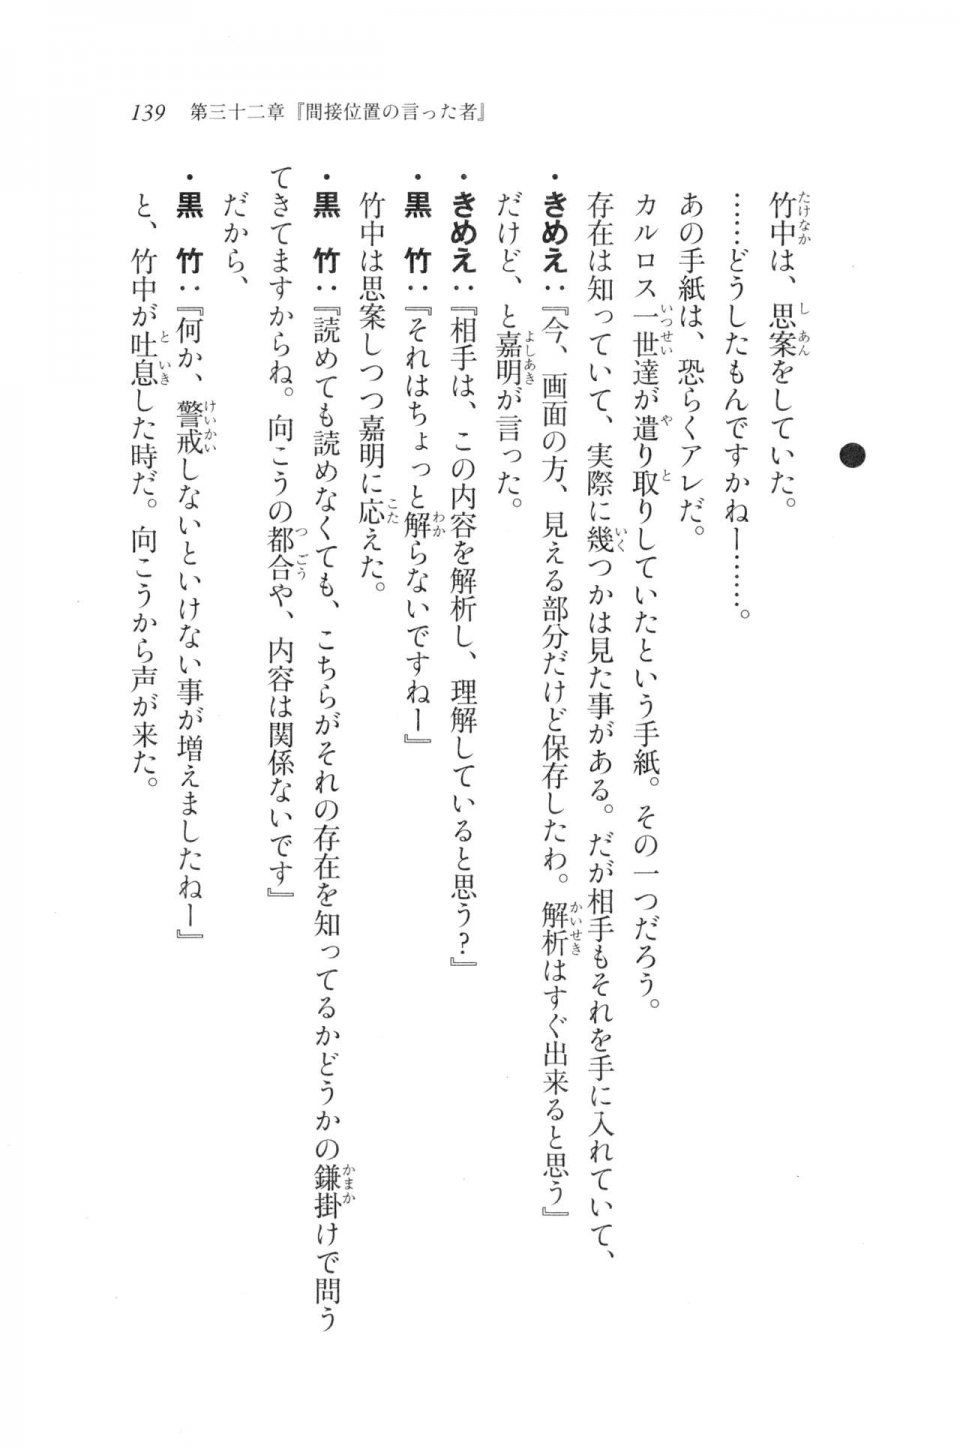 Kyoukai Senjou no Horizon LN Vol 20(8B) - Photo #139